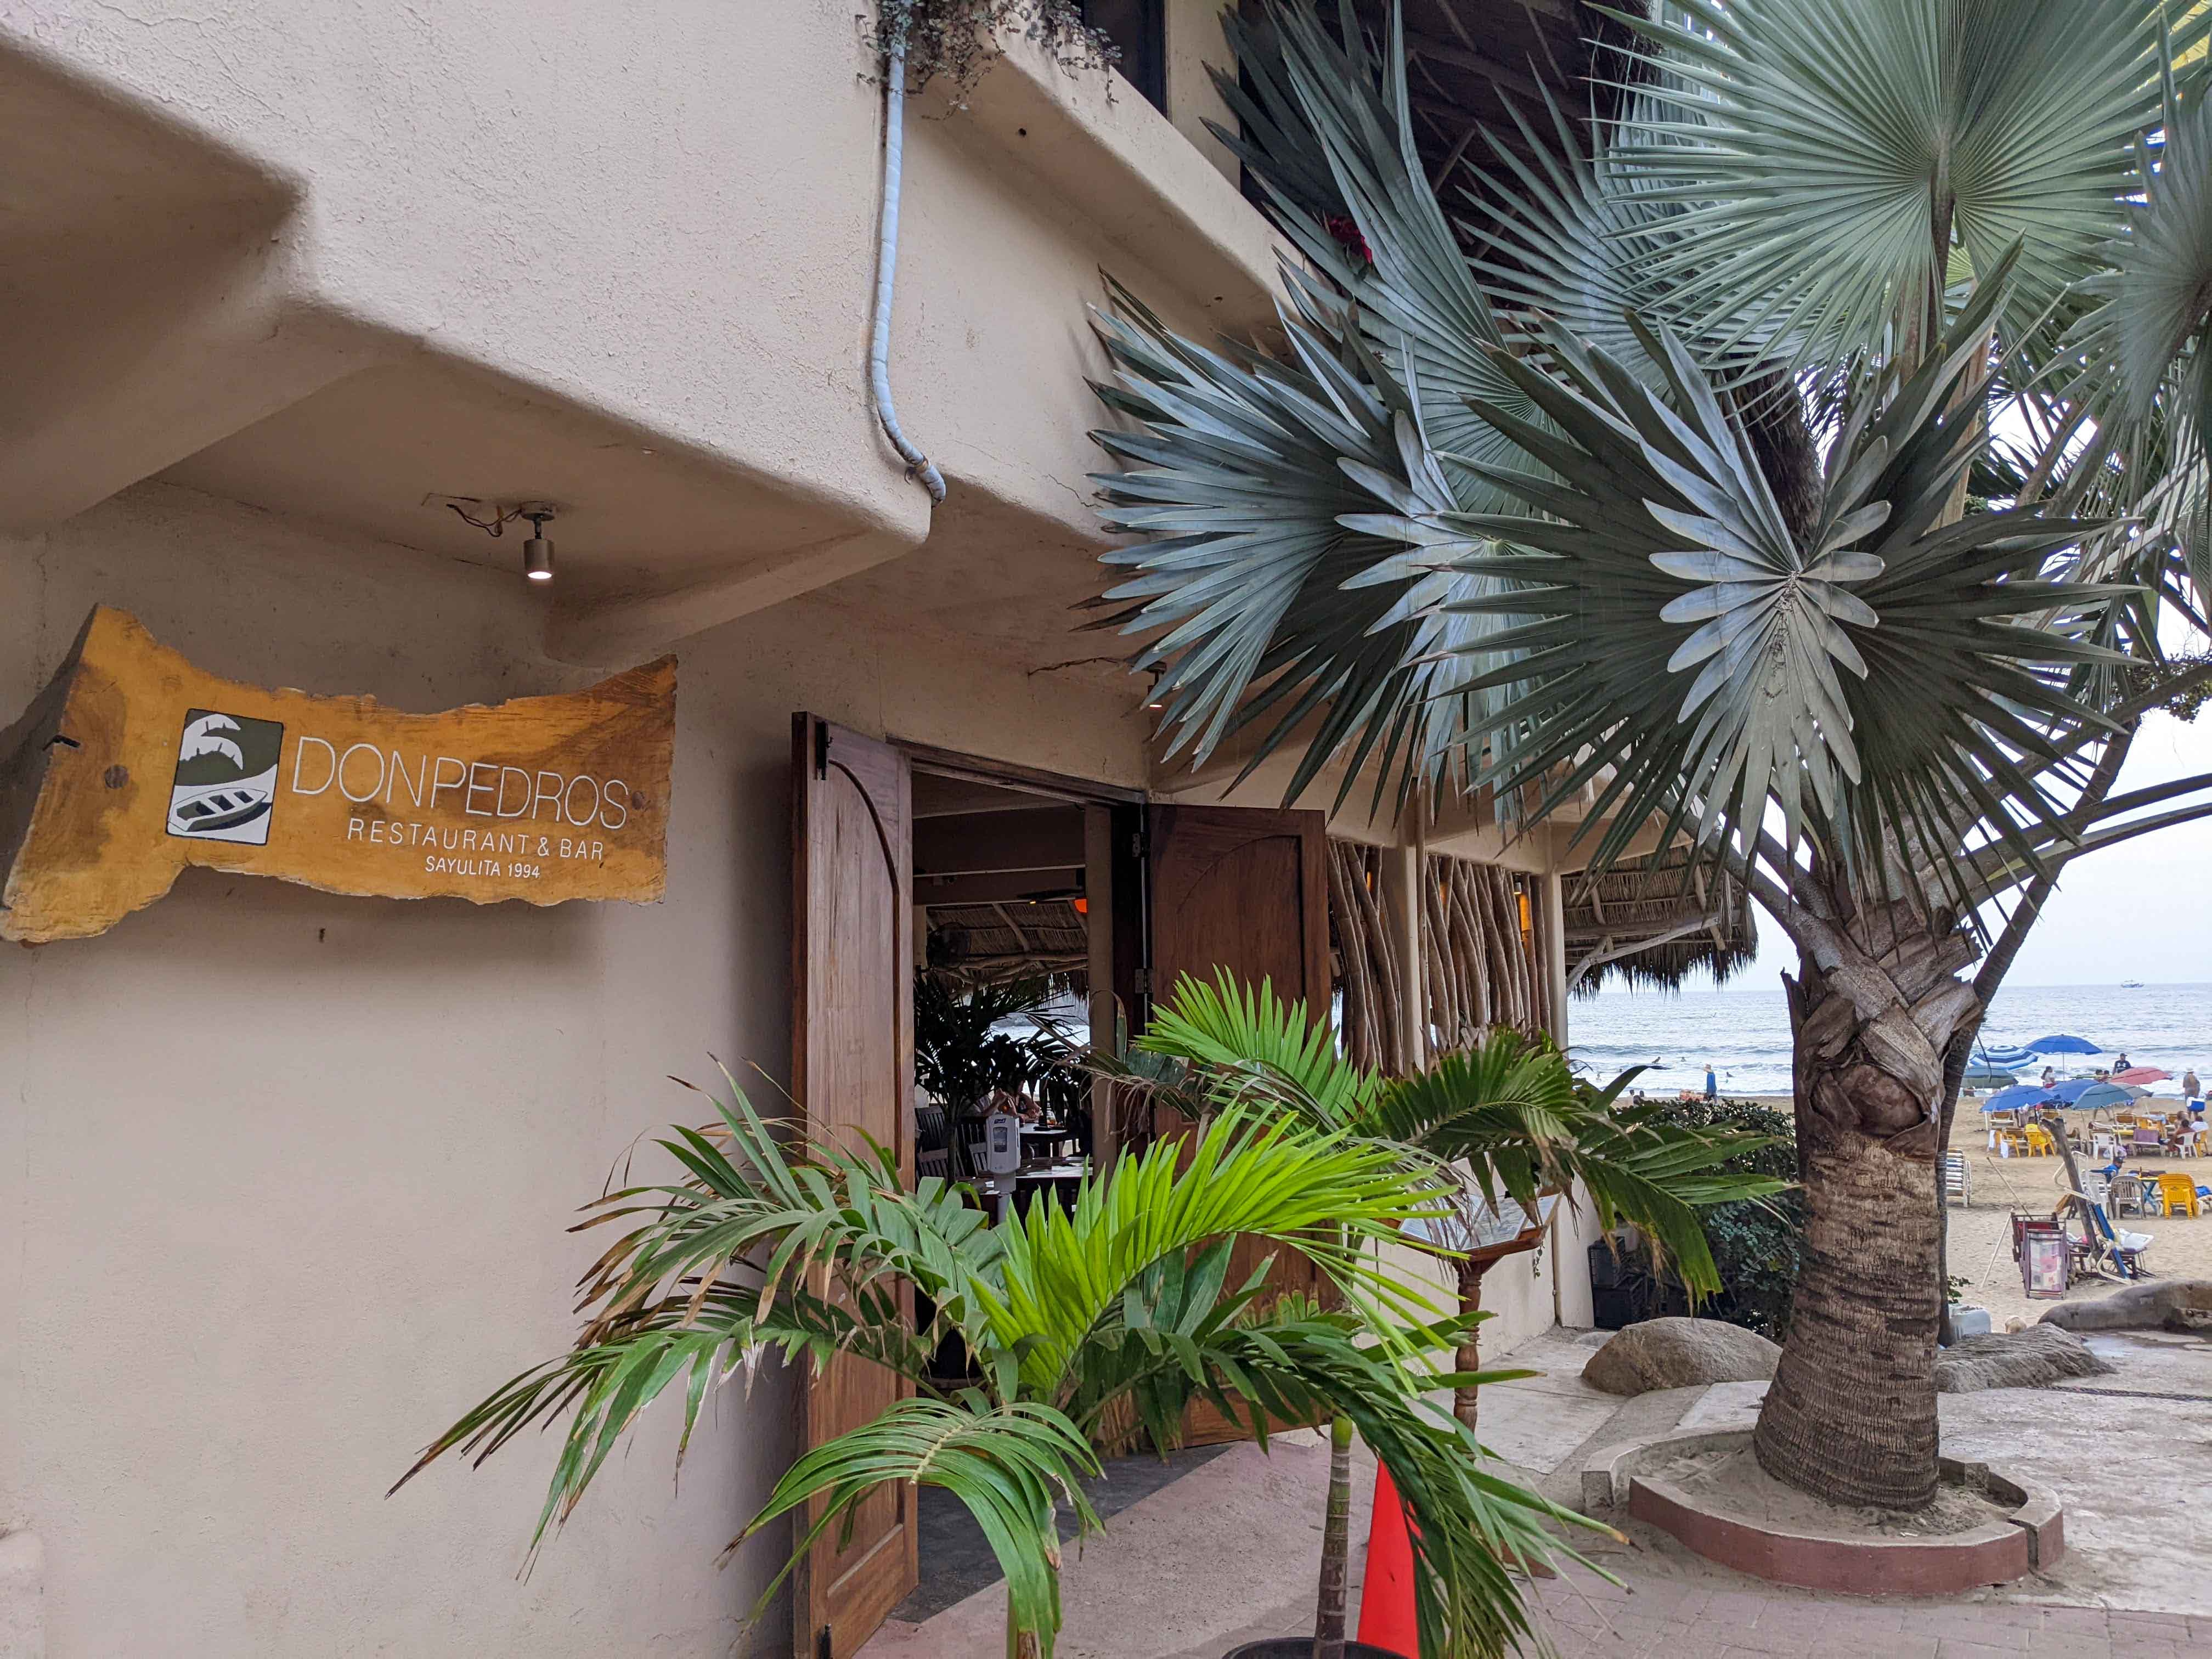 Facade of Don Pedros restaurant in Sayulita next to the beach